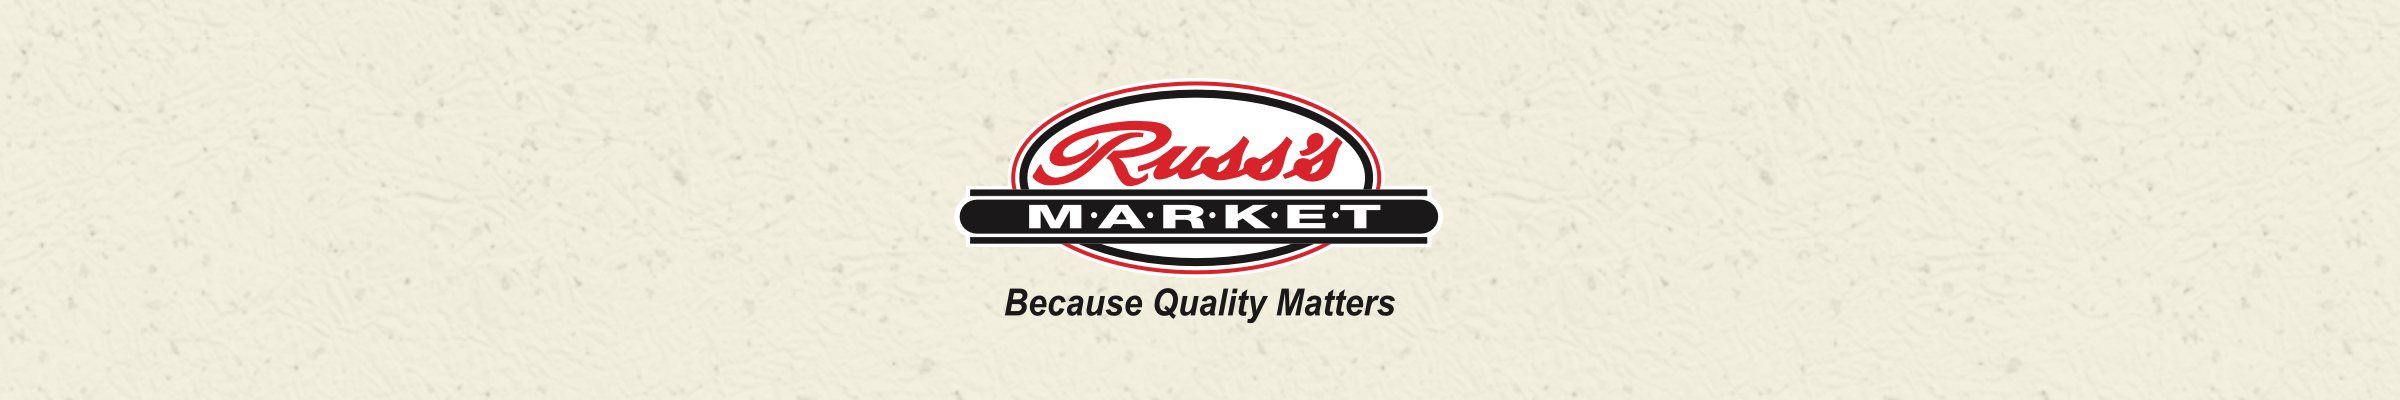 Russ's Market - Glenwood